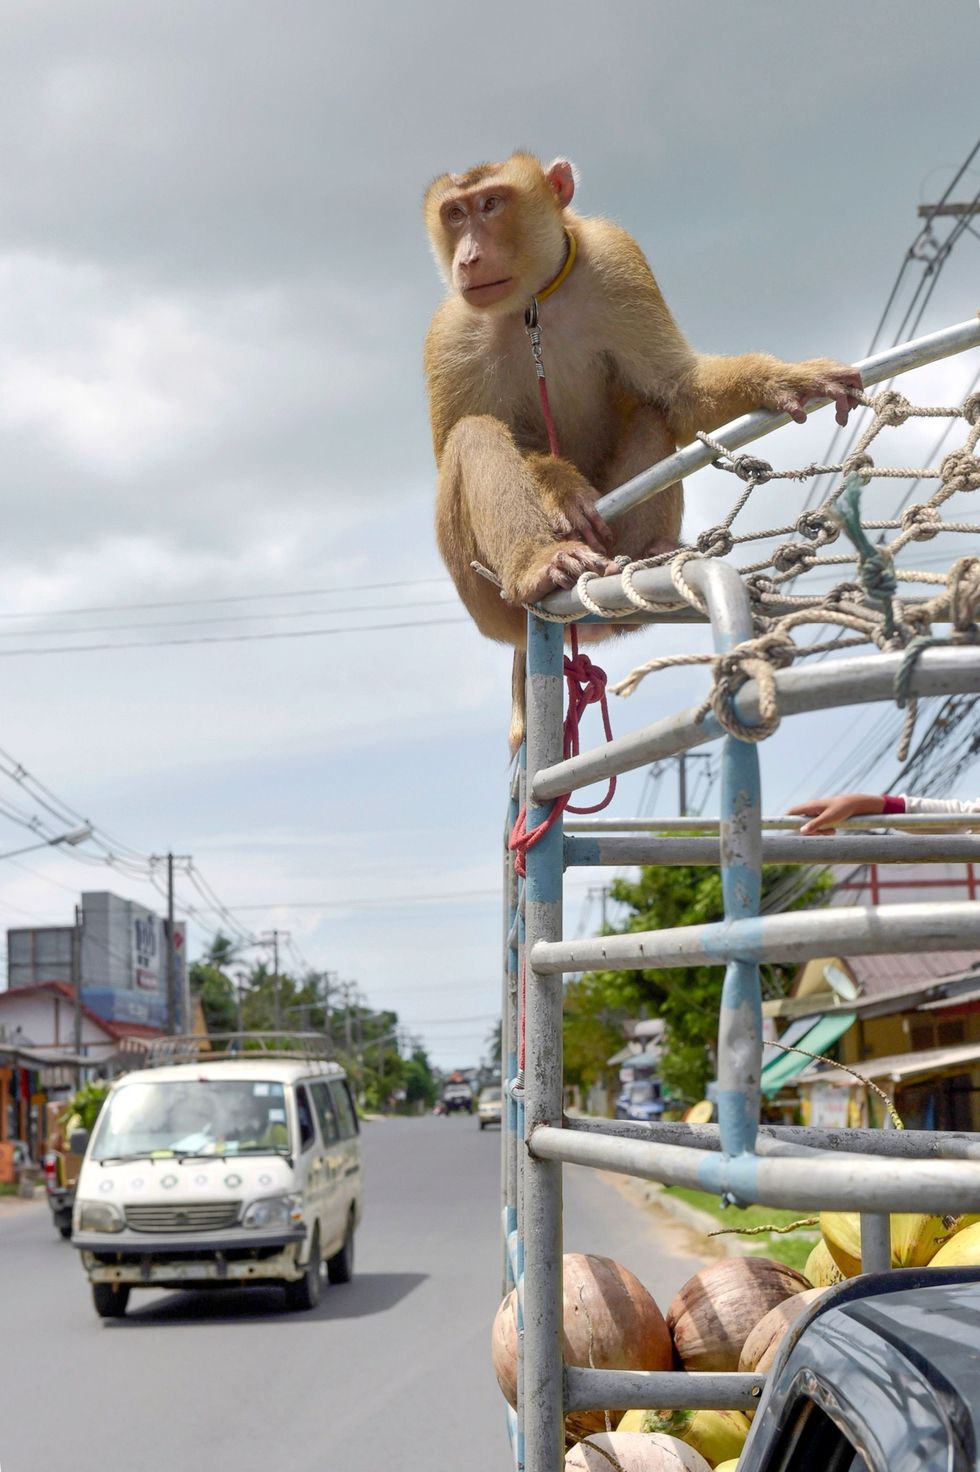 Enkele plantagehouders verklaarden tegenover onderzoekers van PETA dat het bezoek van inspecteurs aan hun kokosplantages van te voren was aangekondigd zodat ze de aapjes konden verbergen